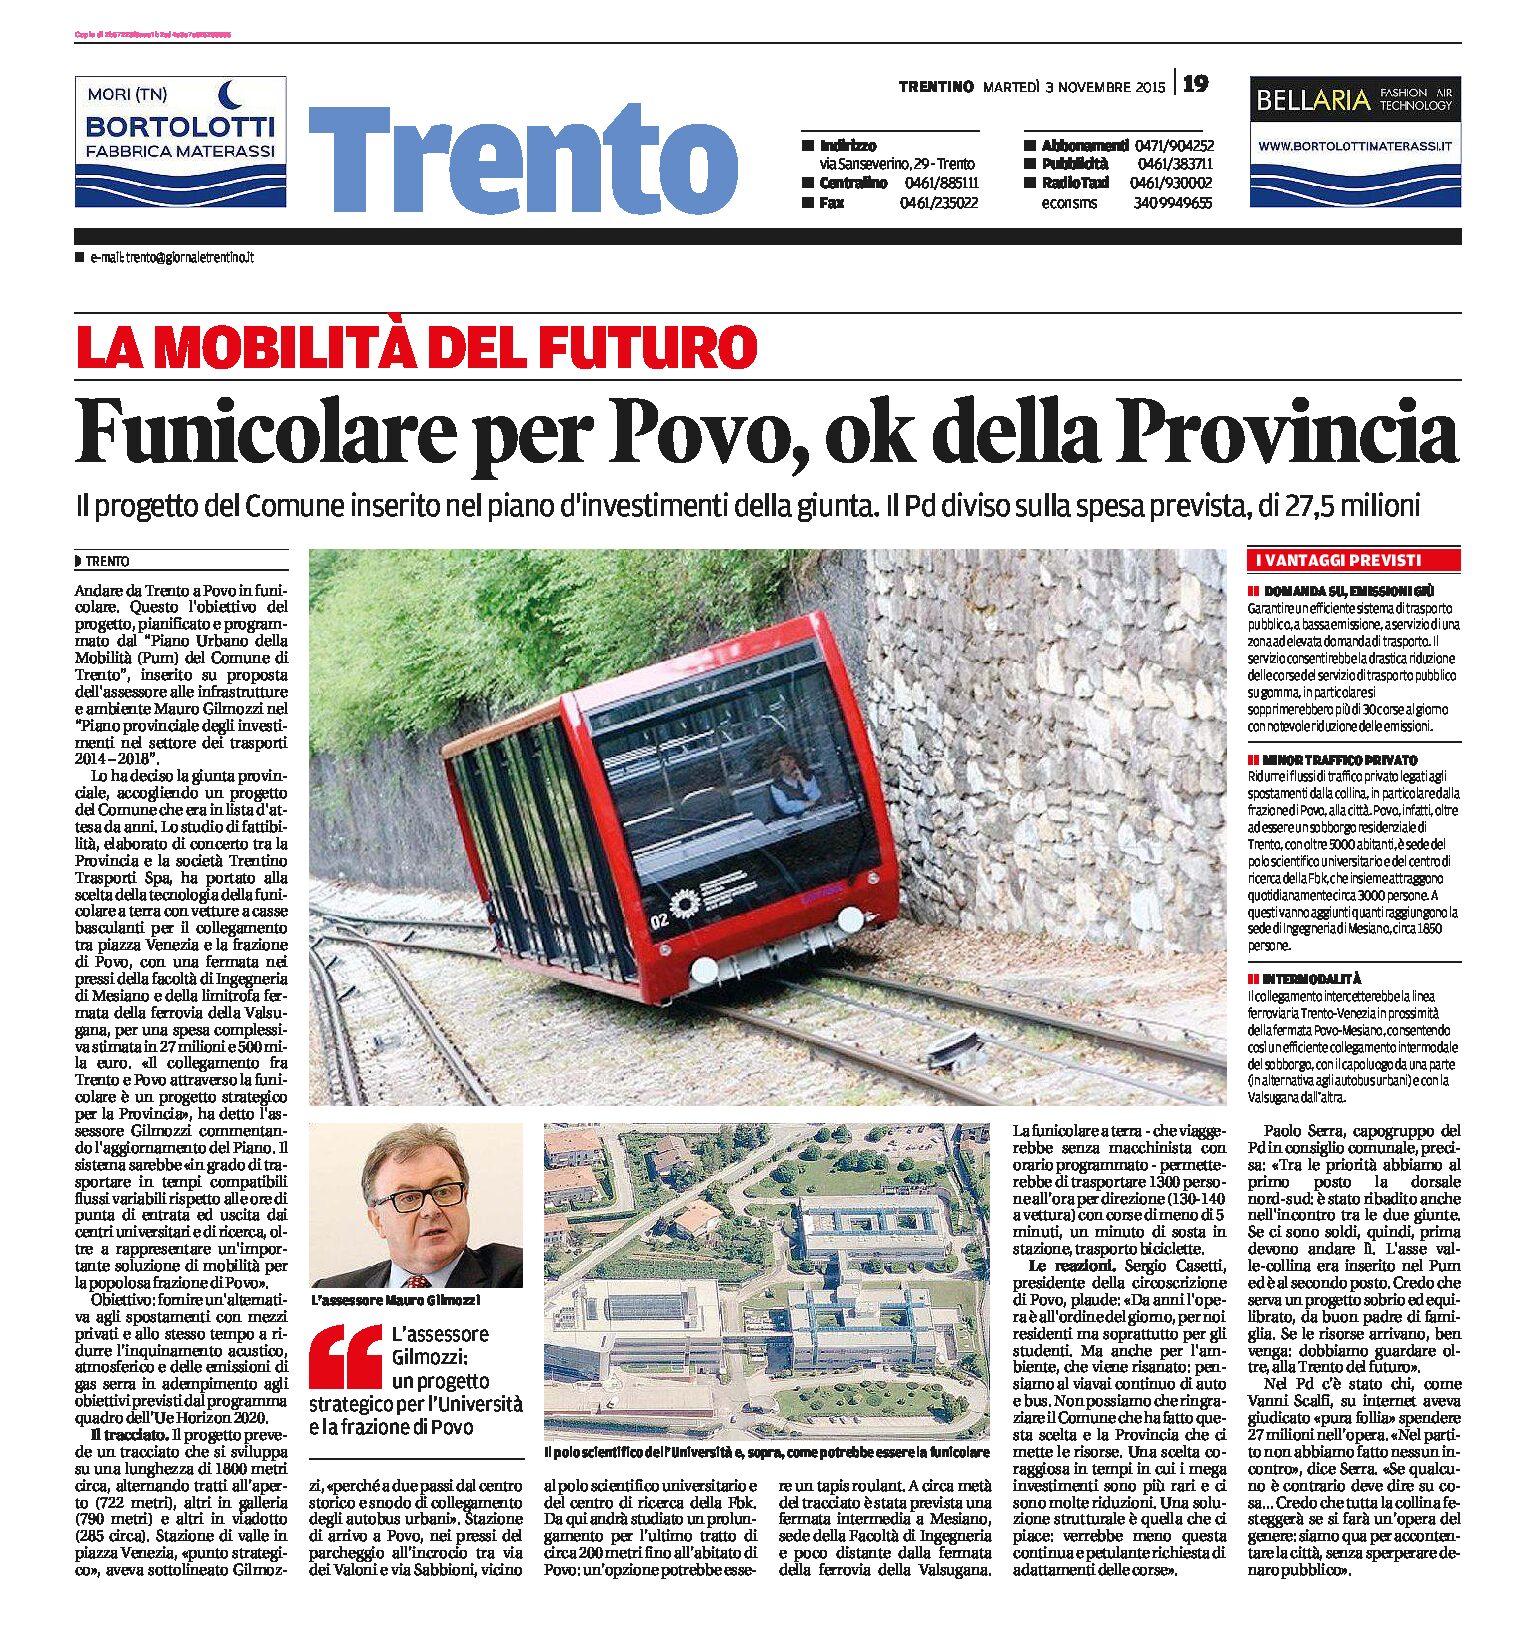 Trento-Povo: funicolare ok della Provincia